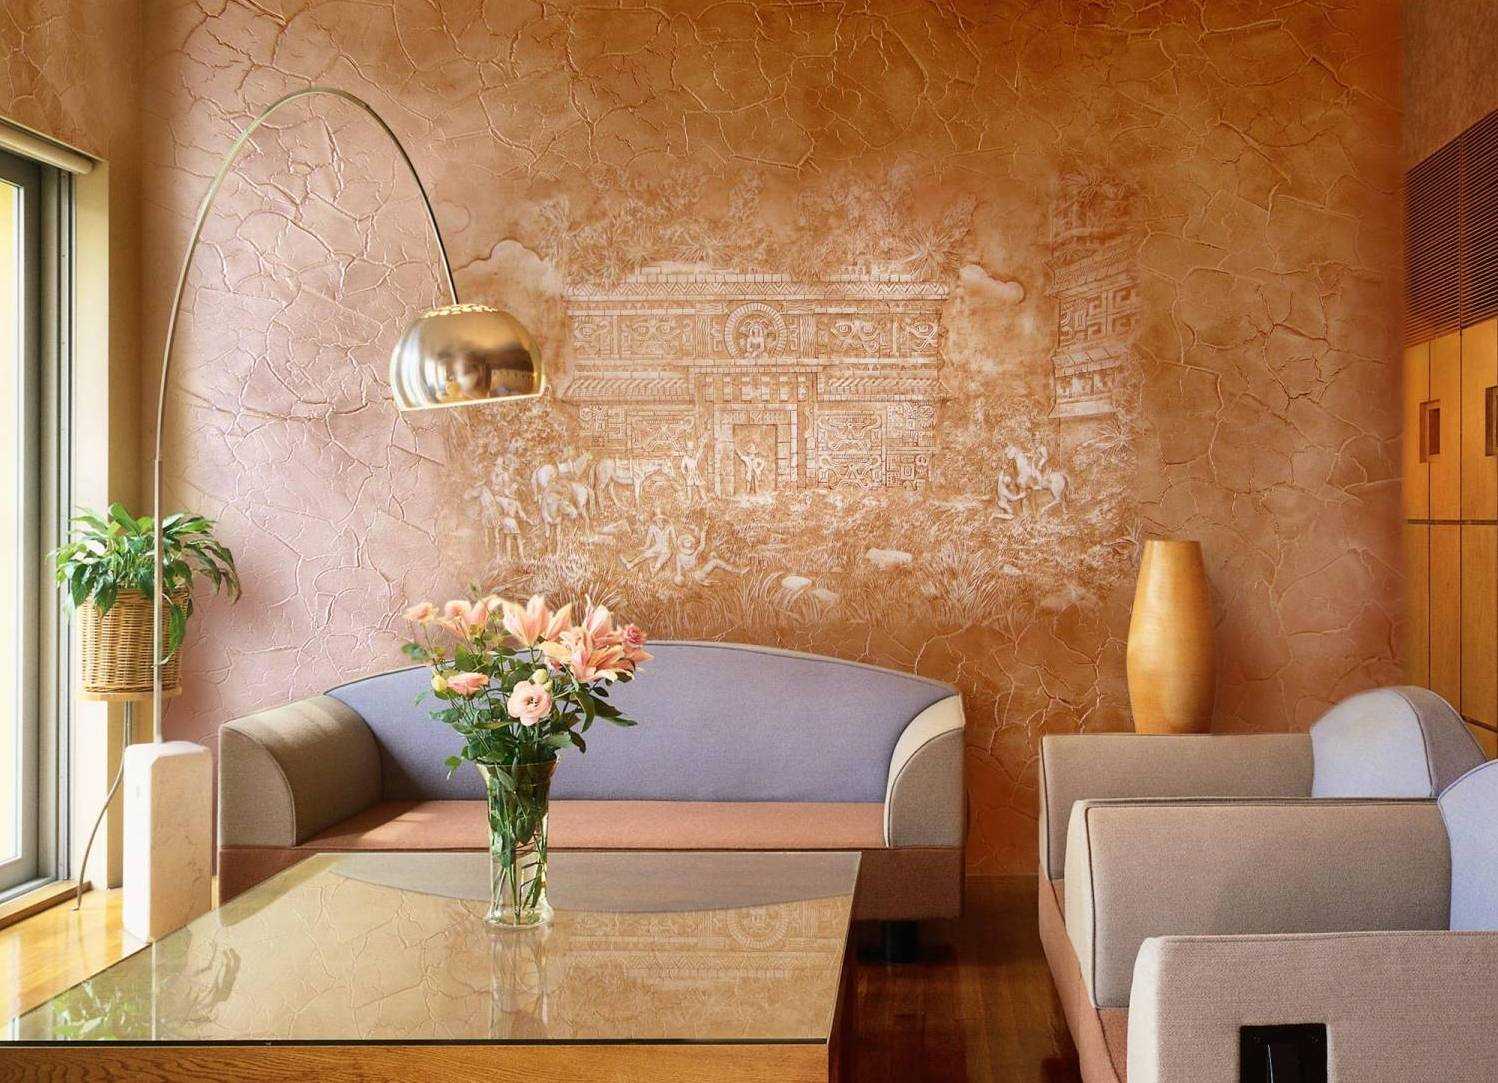 dzīvokļa modernā dekora versija ar dekoratīvu rakstu uz sienas